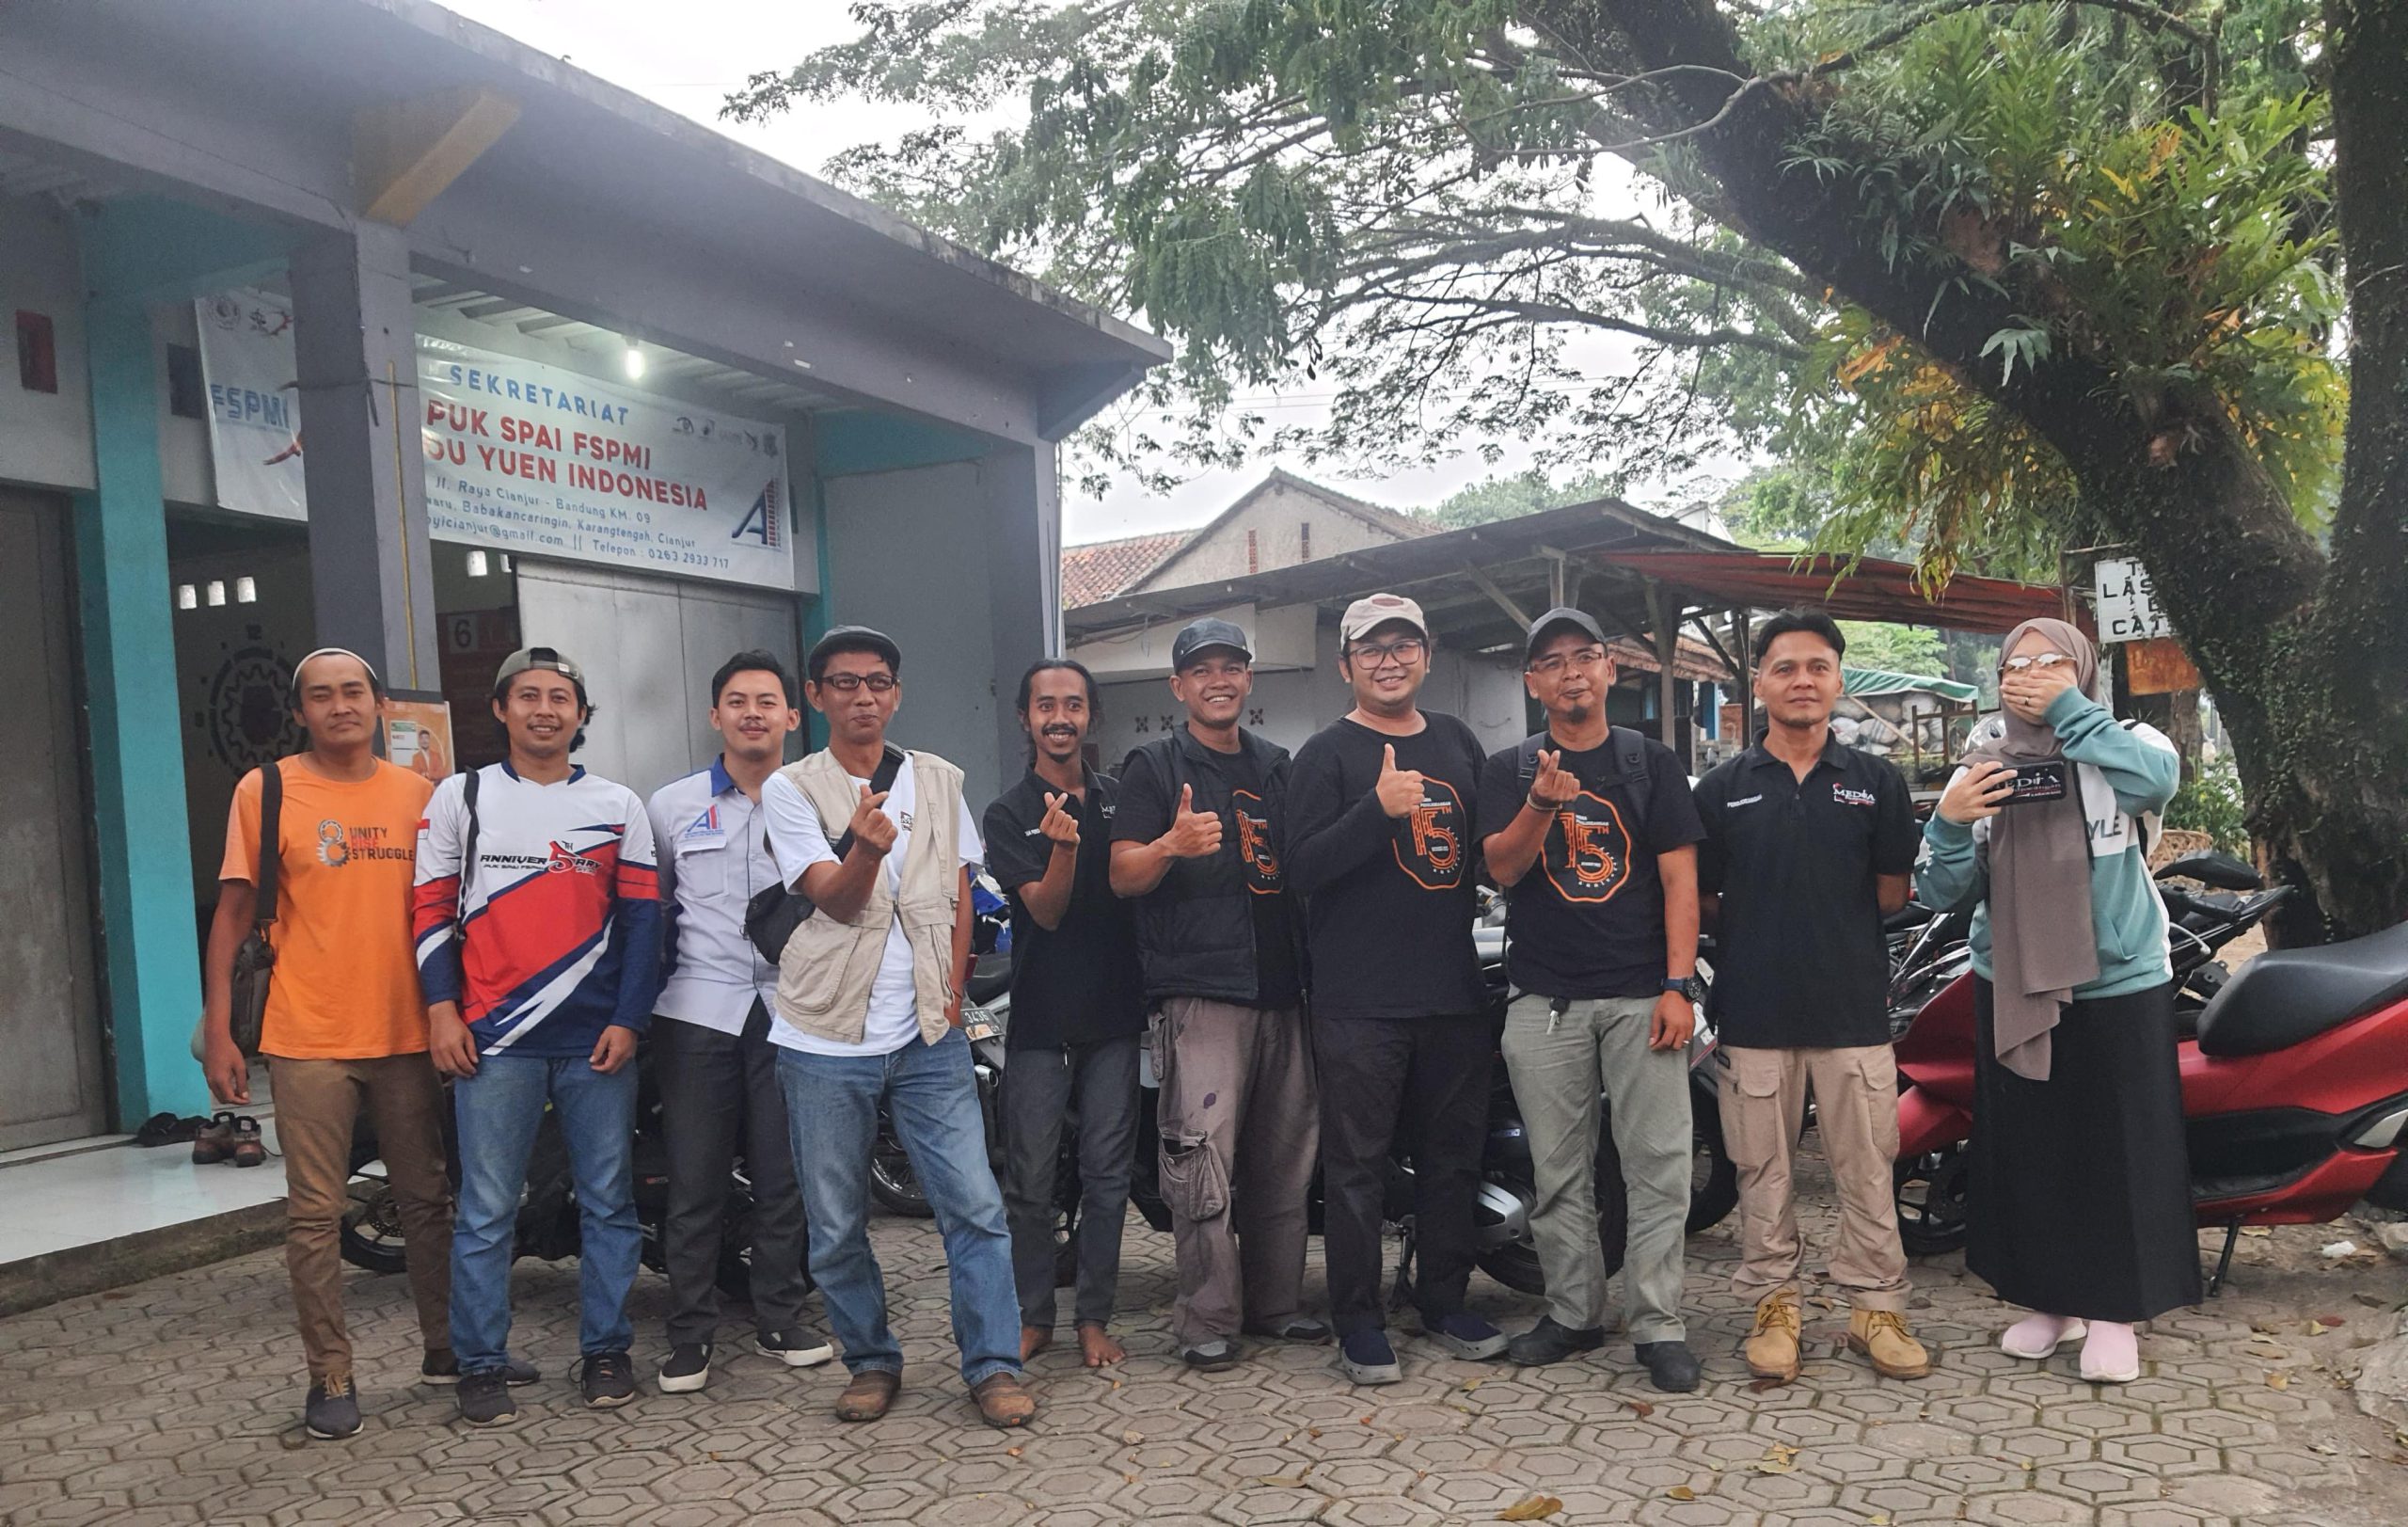 Rakor MP Jawa Barat : Berkumpul dan Berdiskusi, Awal Media Jabar Terbentuk